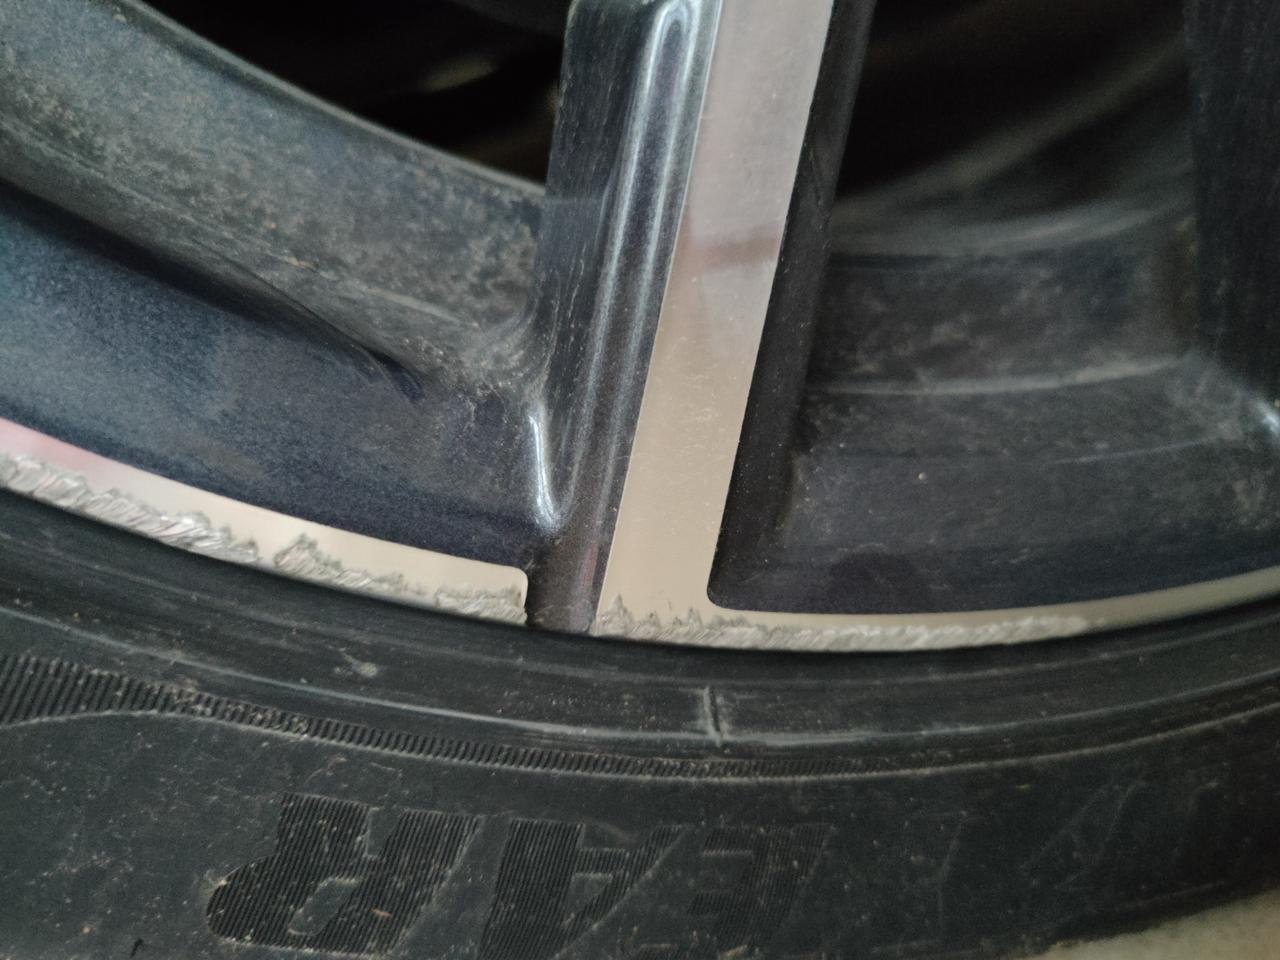 宝马3系 ，轮毂被马路牙子擦伤，这样的需要修复下吗？对行车安全有影响吗？会生锈吗